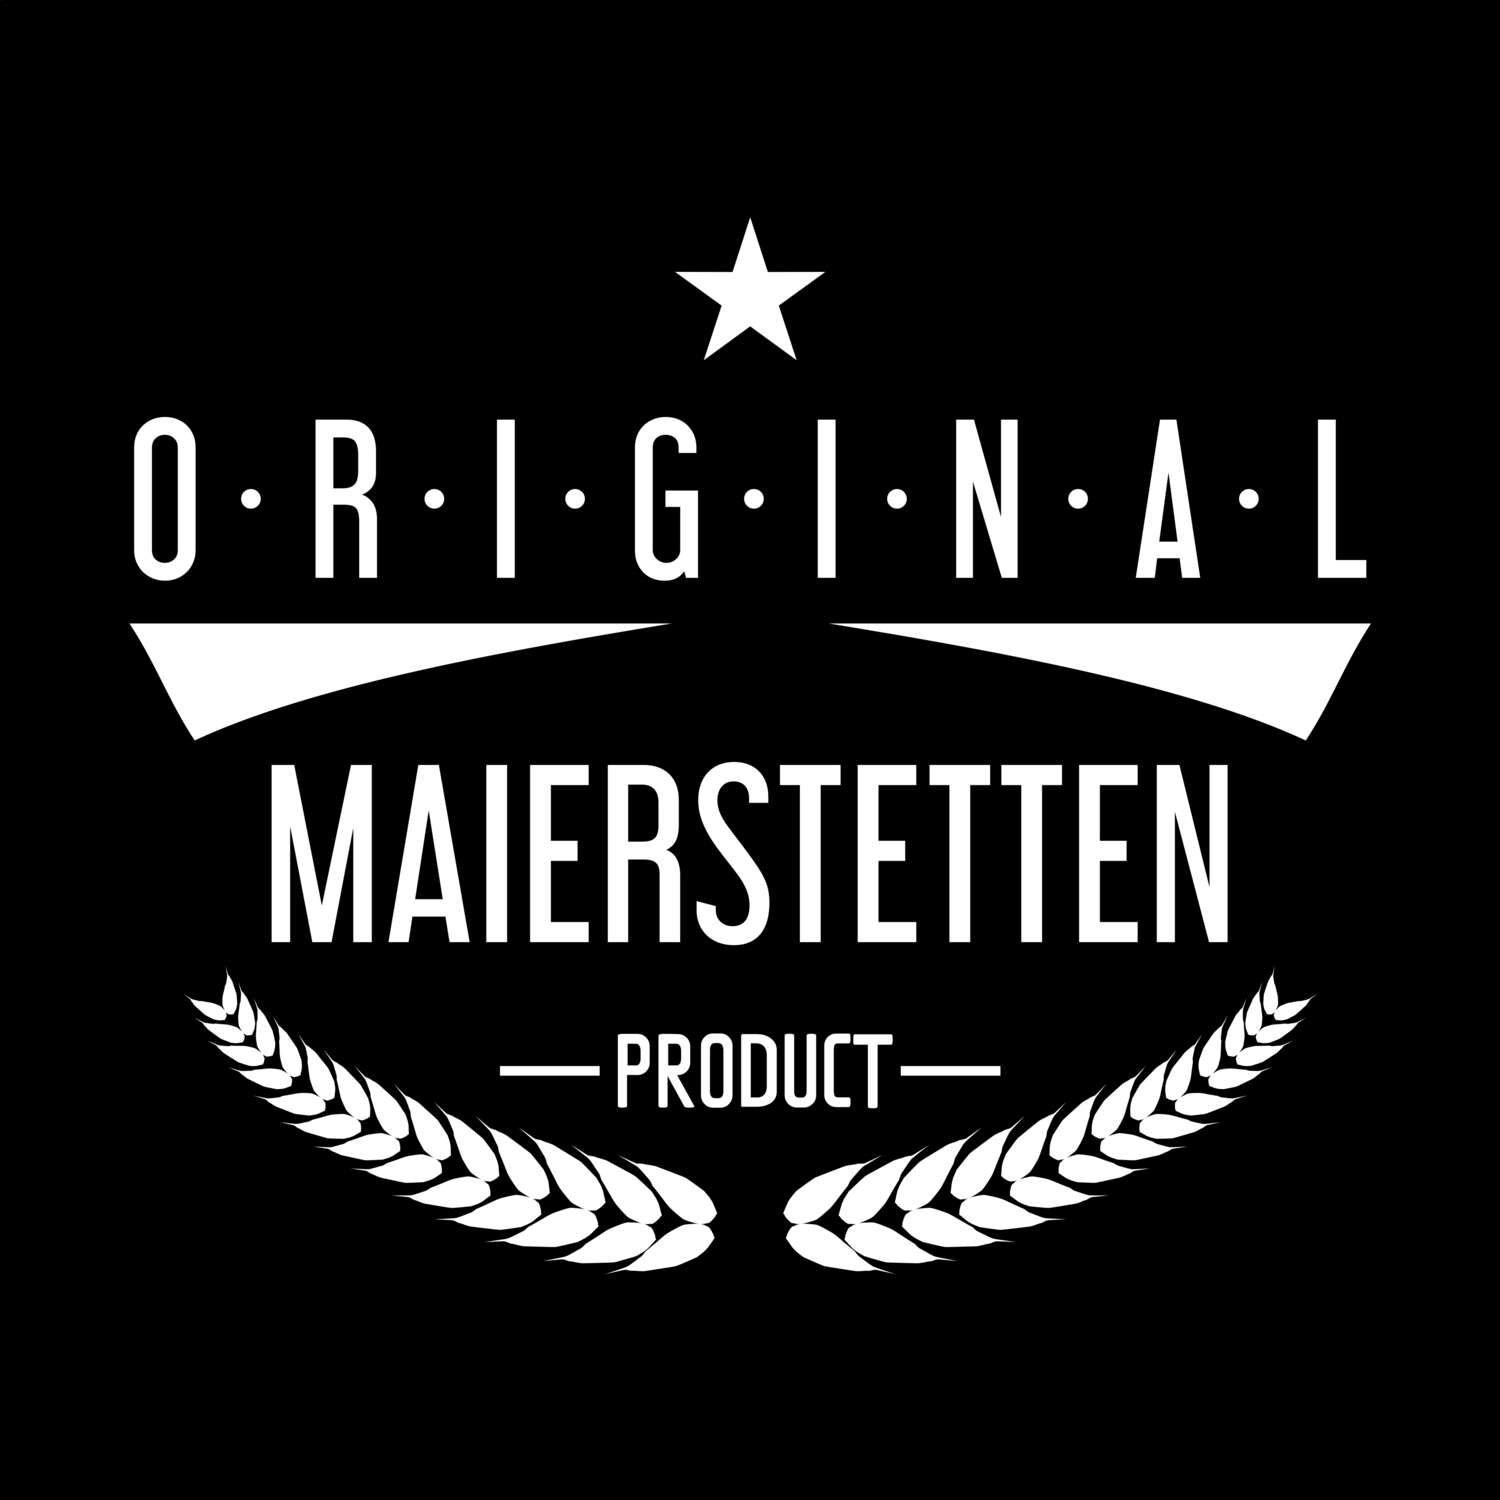 Maierstetten T-Shirt »Original Product«